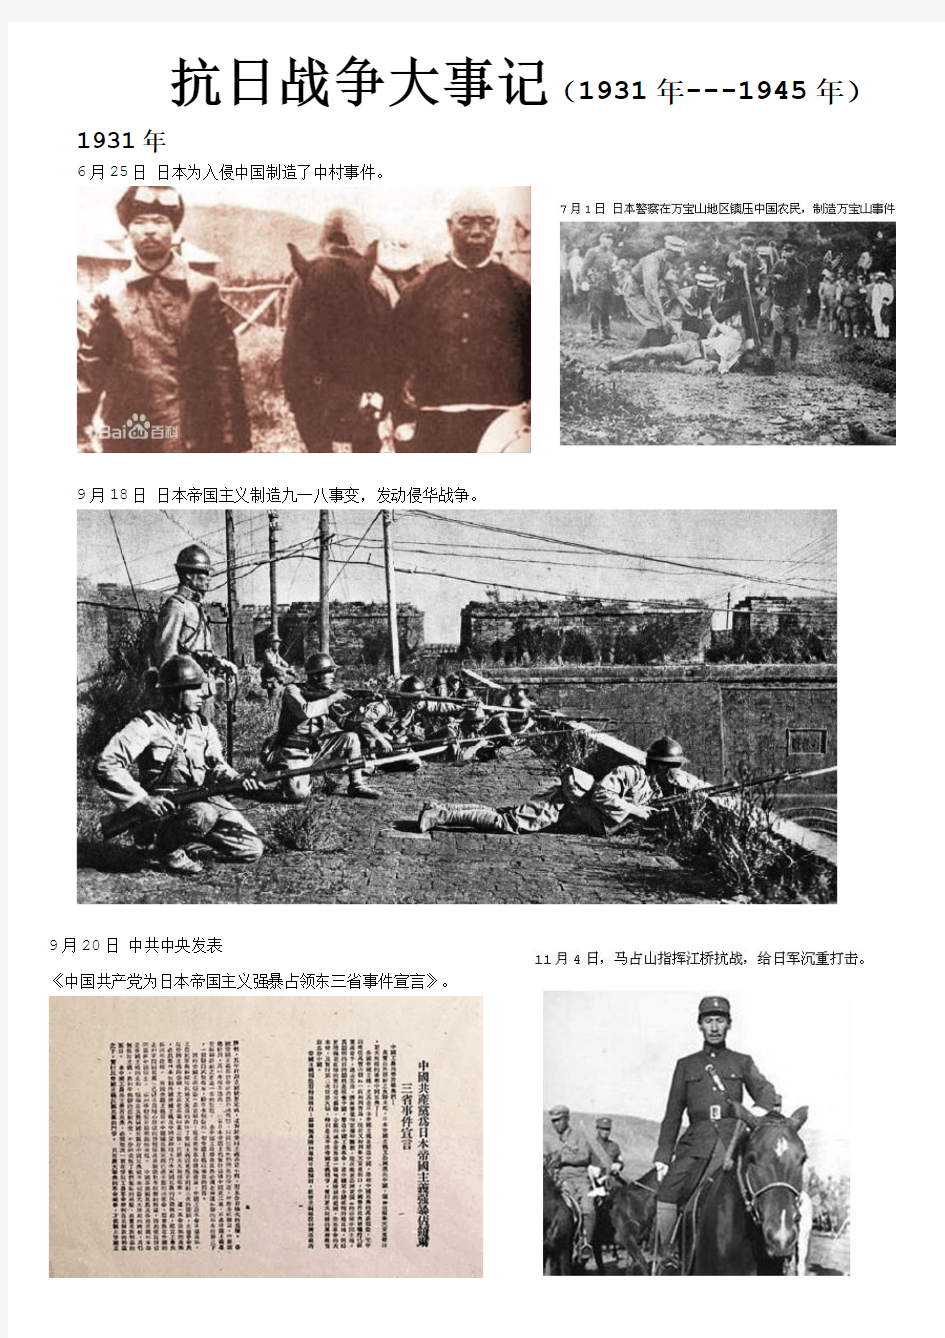 抗日战争大事记-图文宣传册